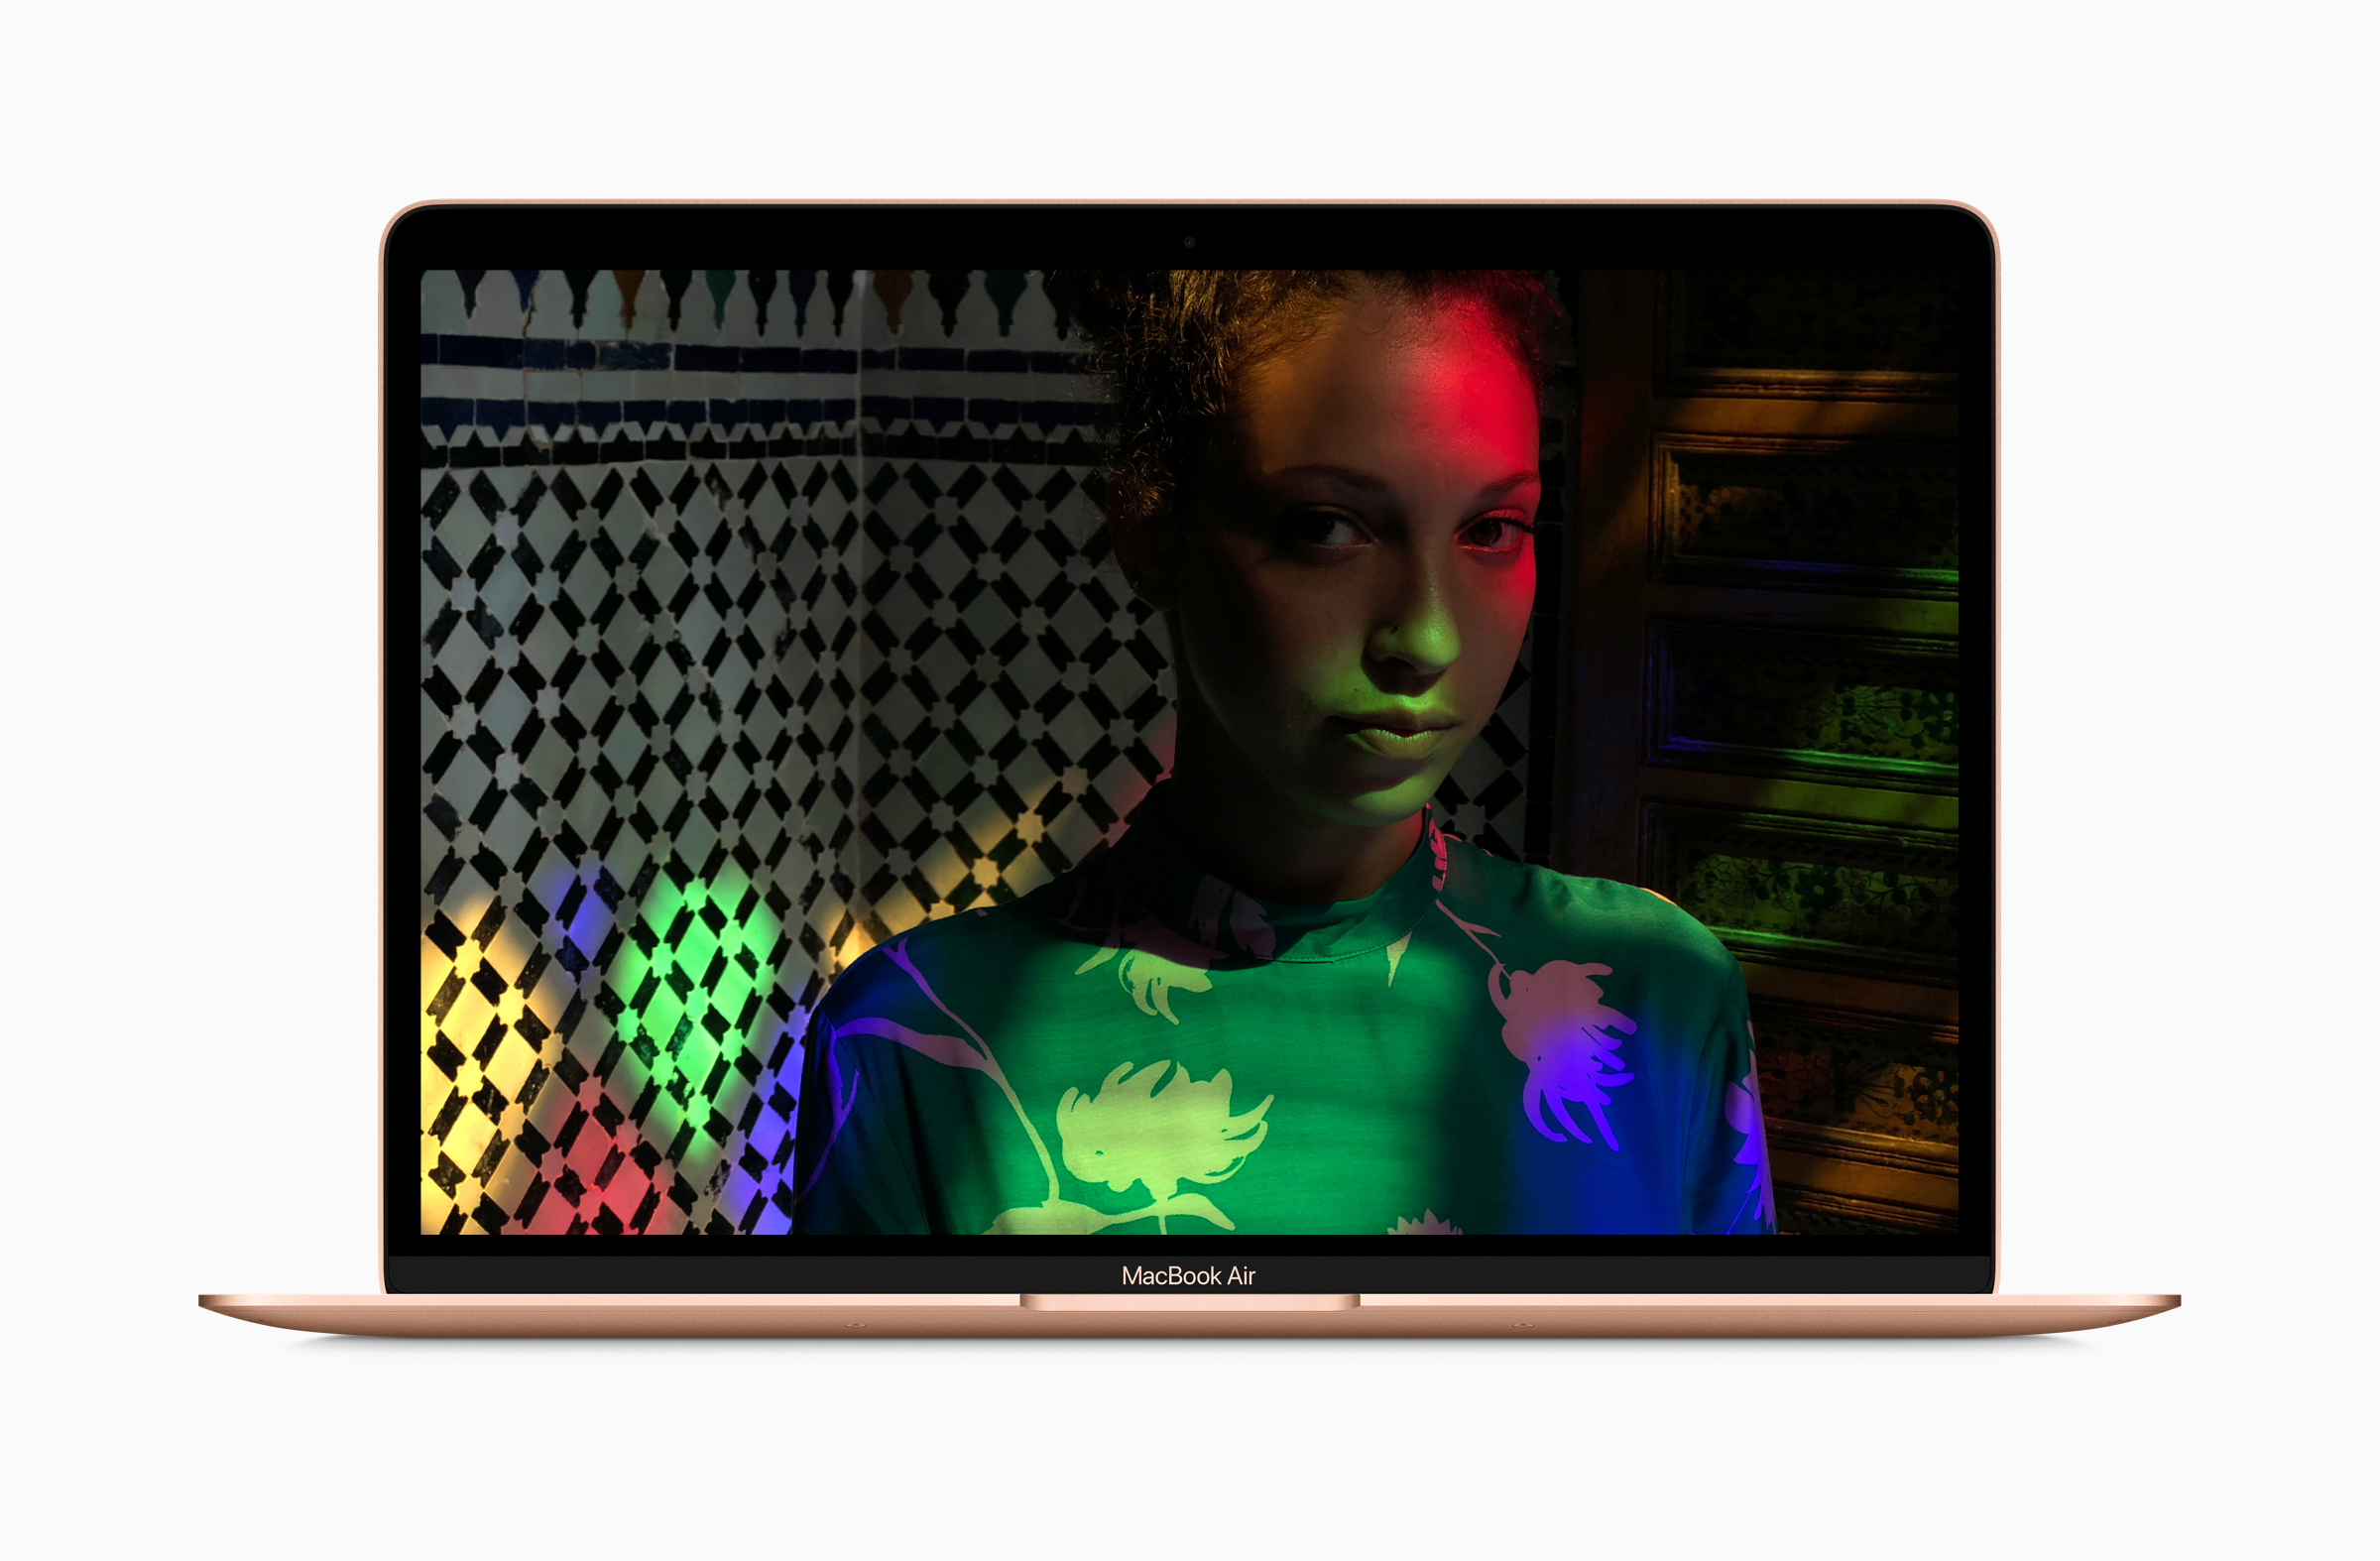 Apple MacBook Air 2018 - Notebookcheck.net External Reviews